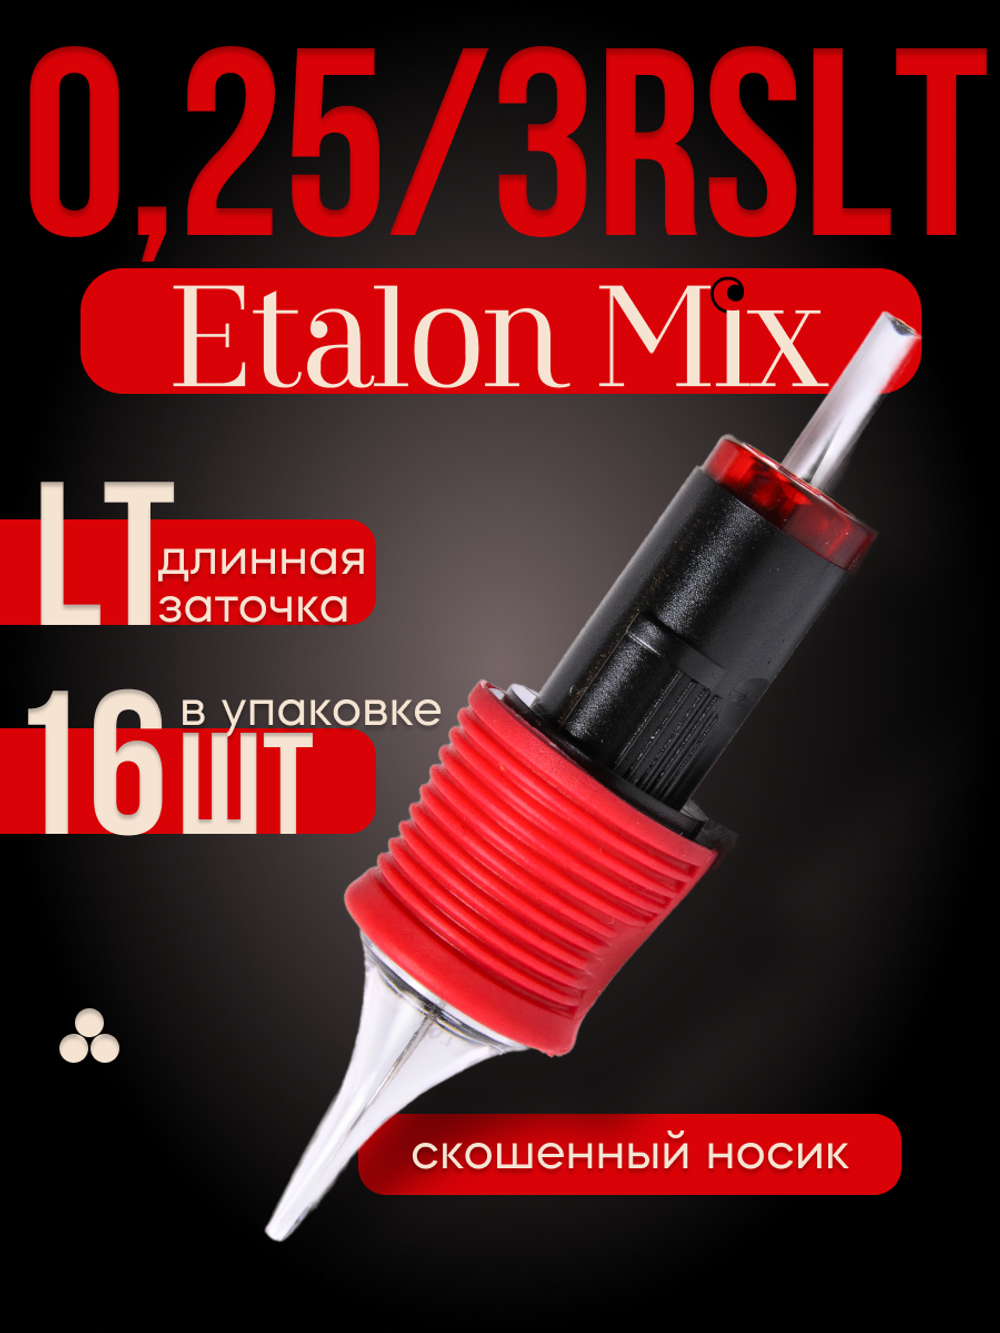 Картриджи для татуажа Etalon Mix 0.25/3RSLT 16 шт